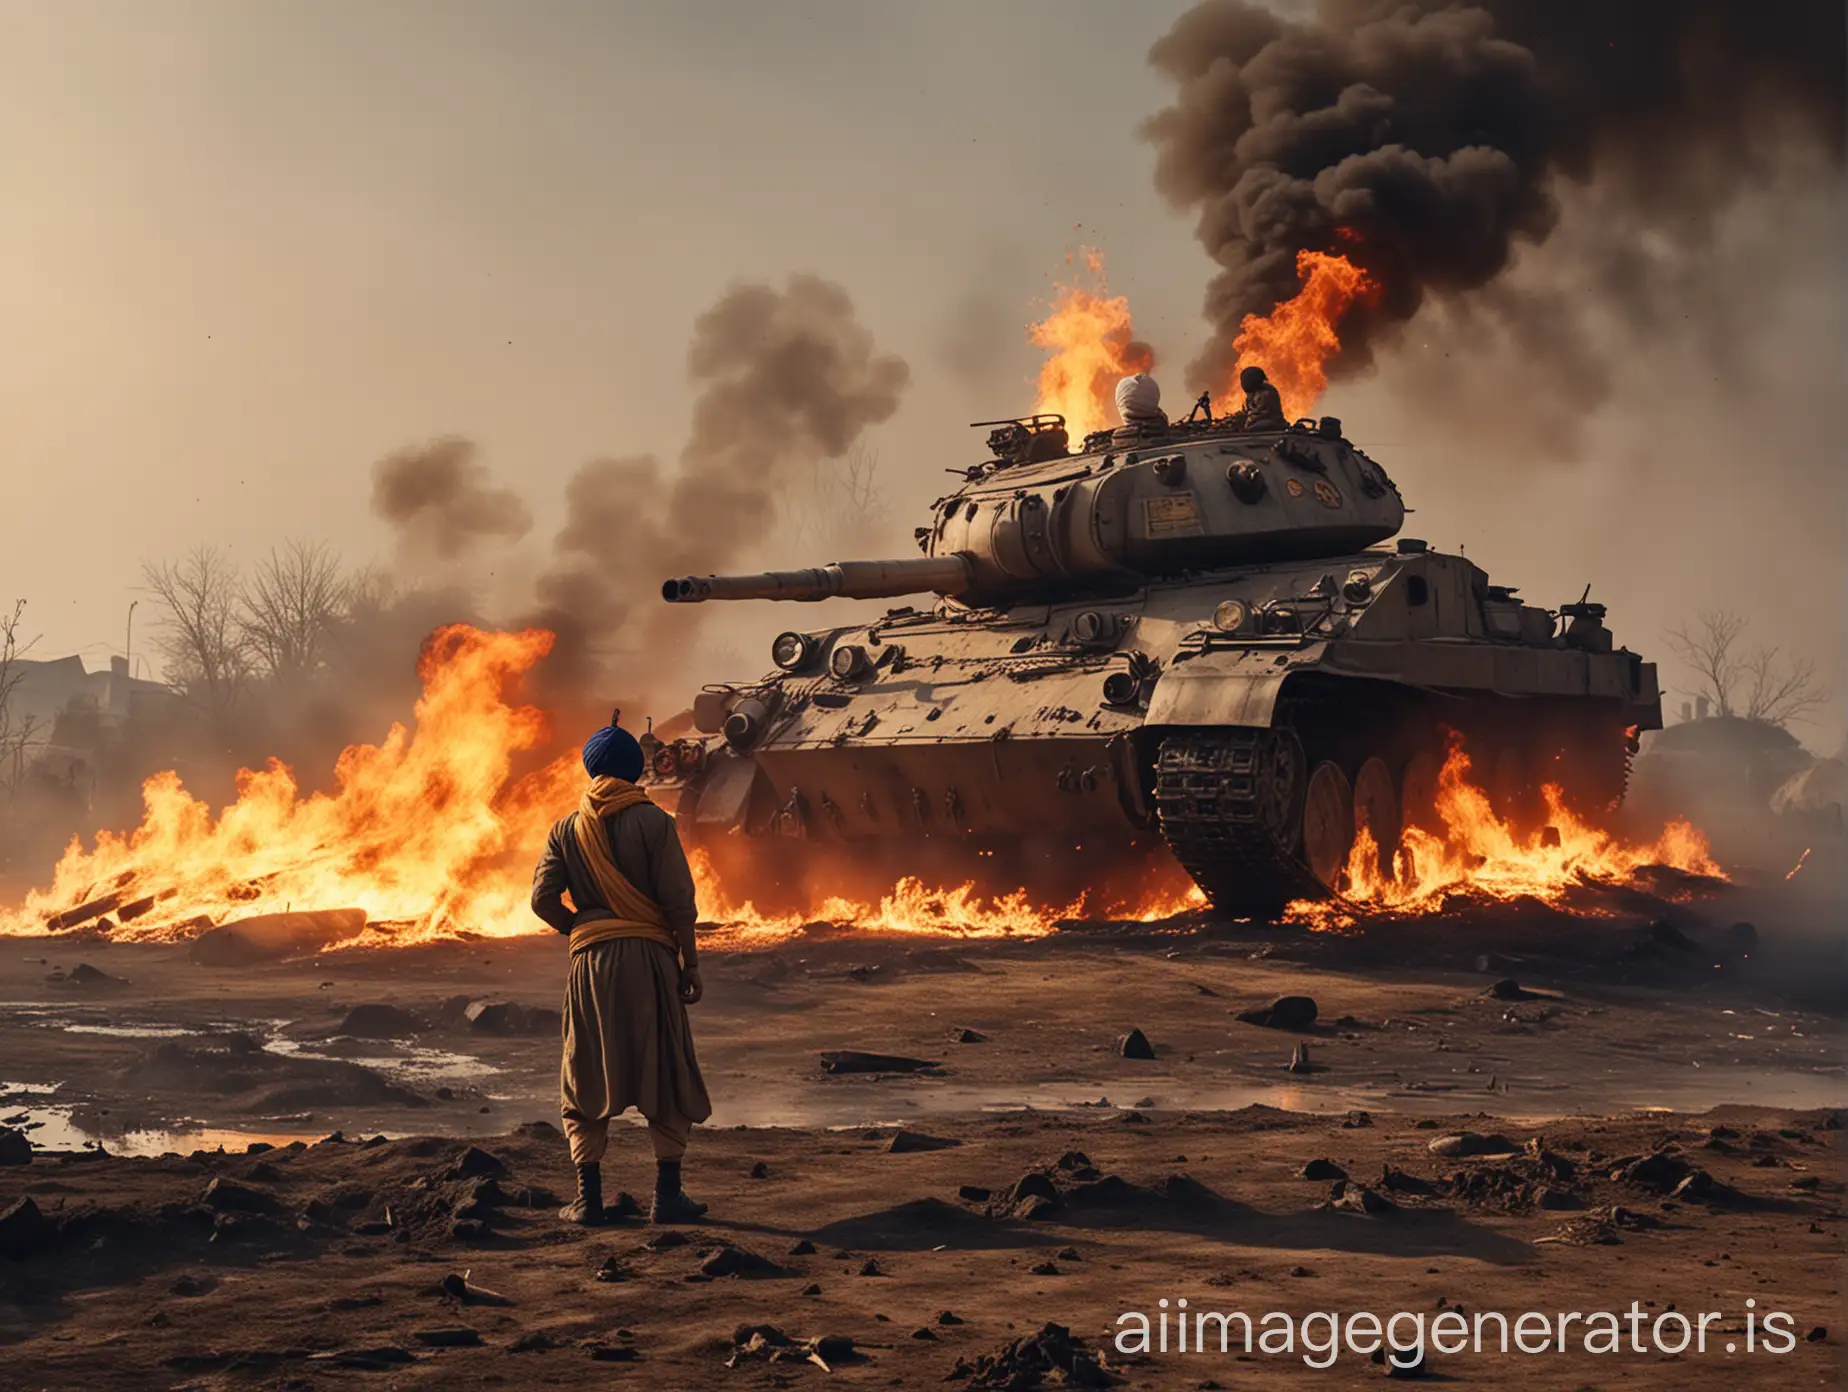 Fiery-Battlefield-Landscape-with-Turbaned-Sikh-Tank-Commander